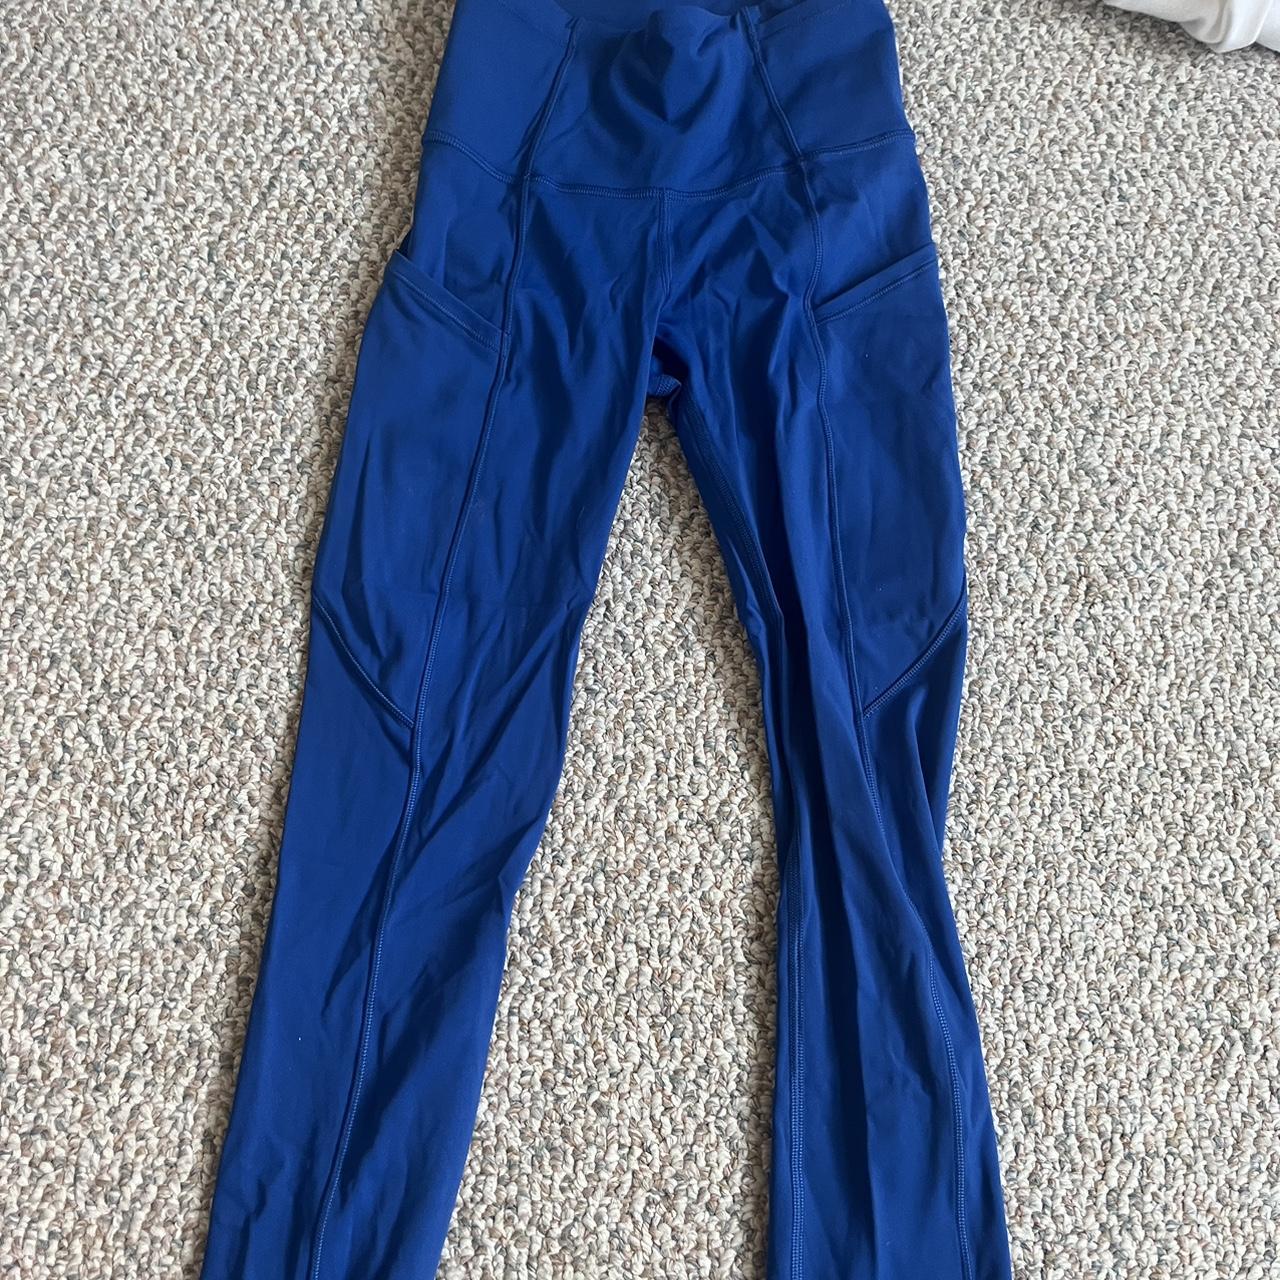 Lululemon leggings -size 0 -royal blue color - Depop